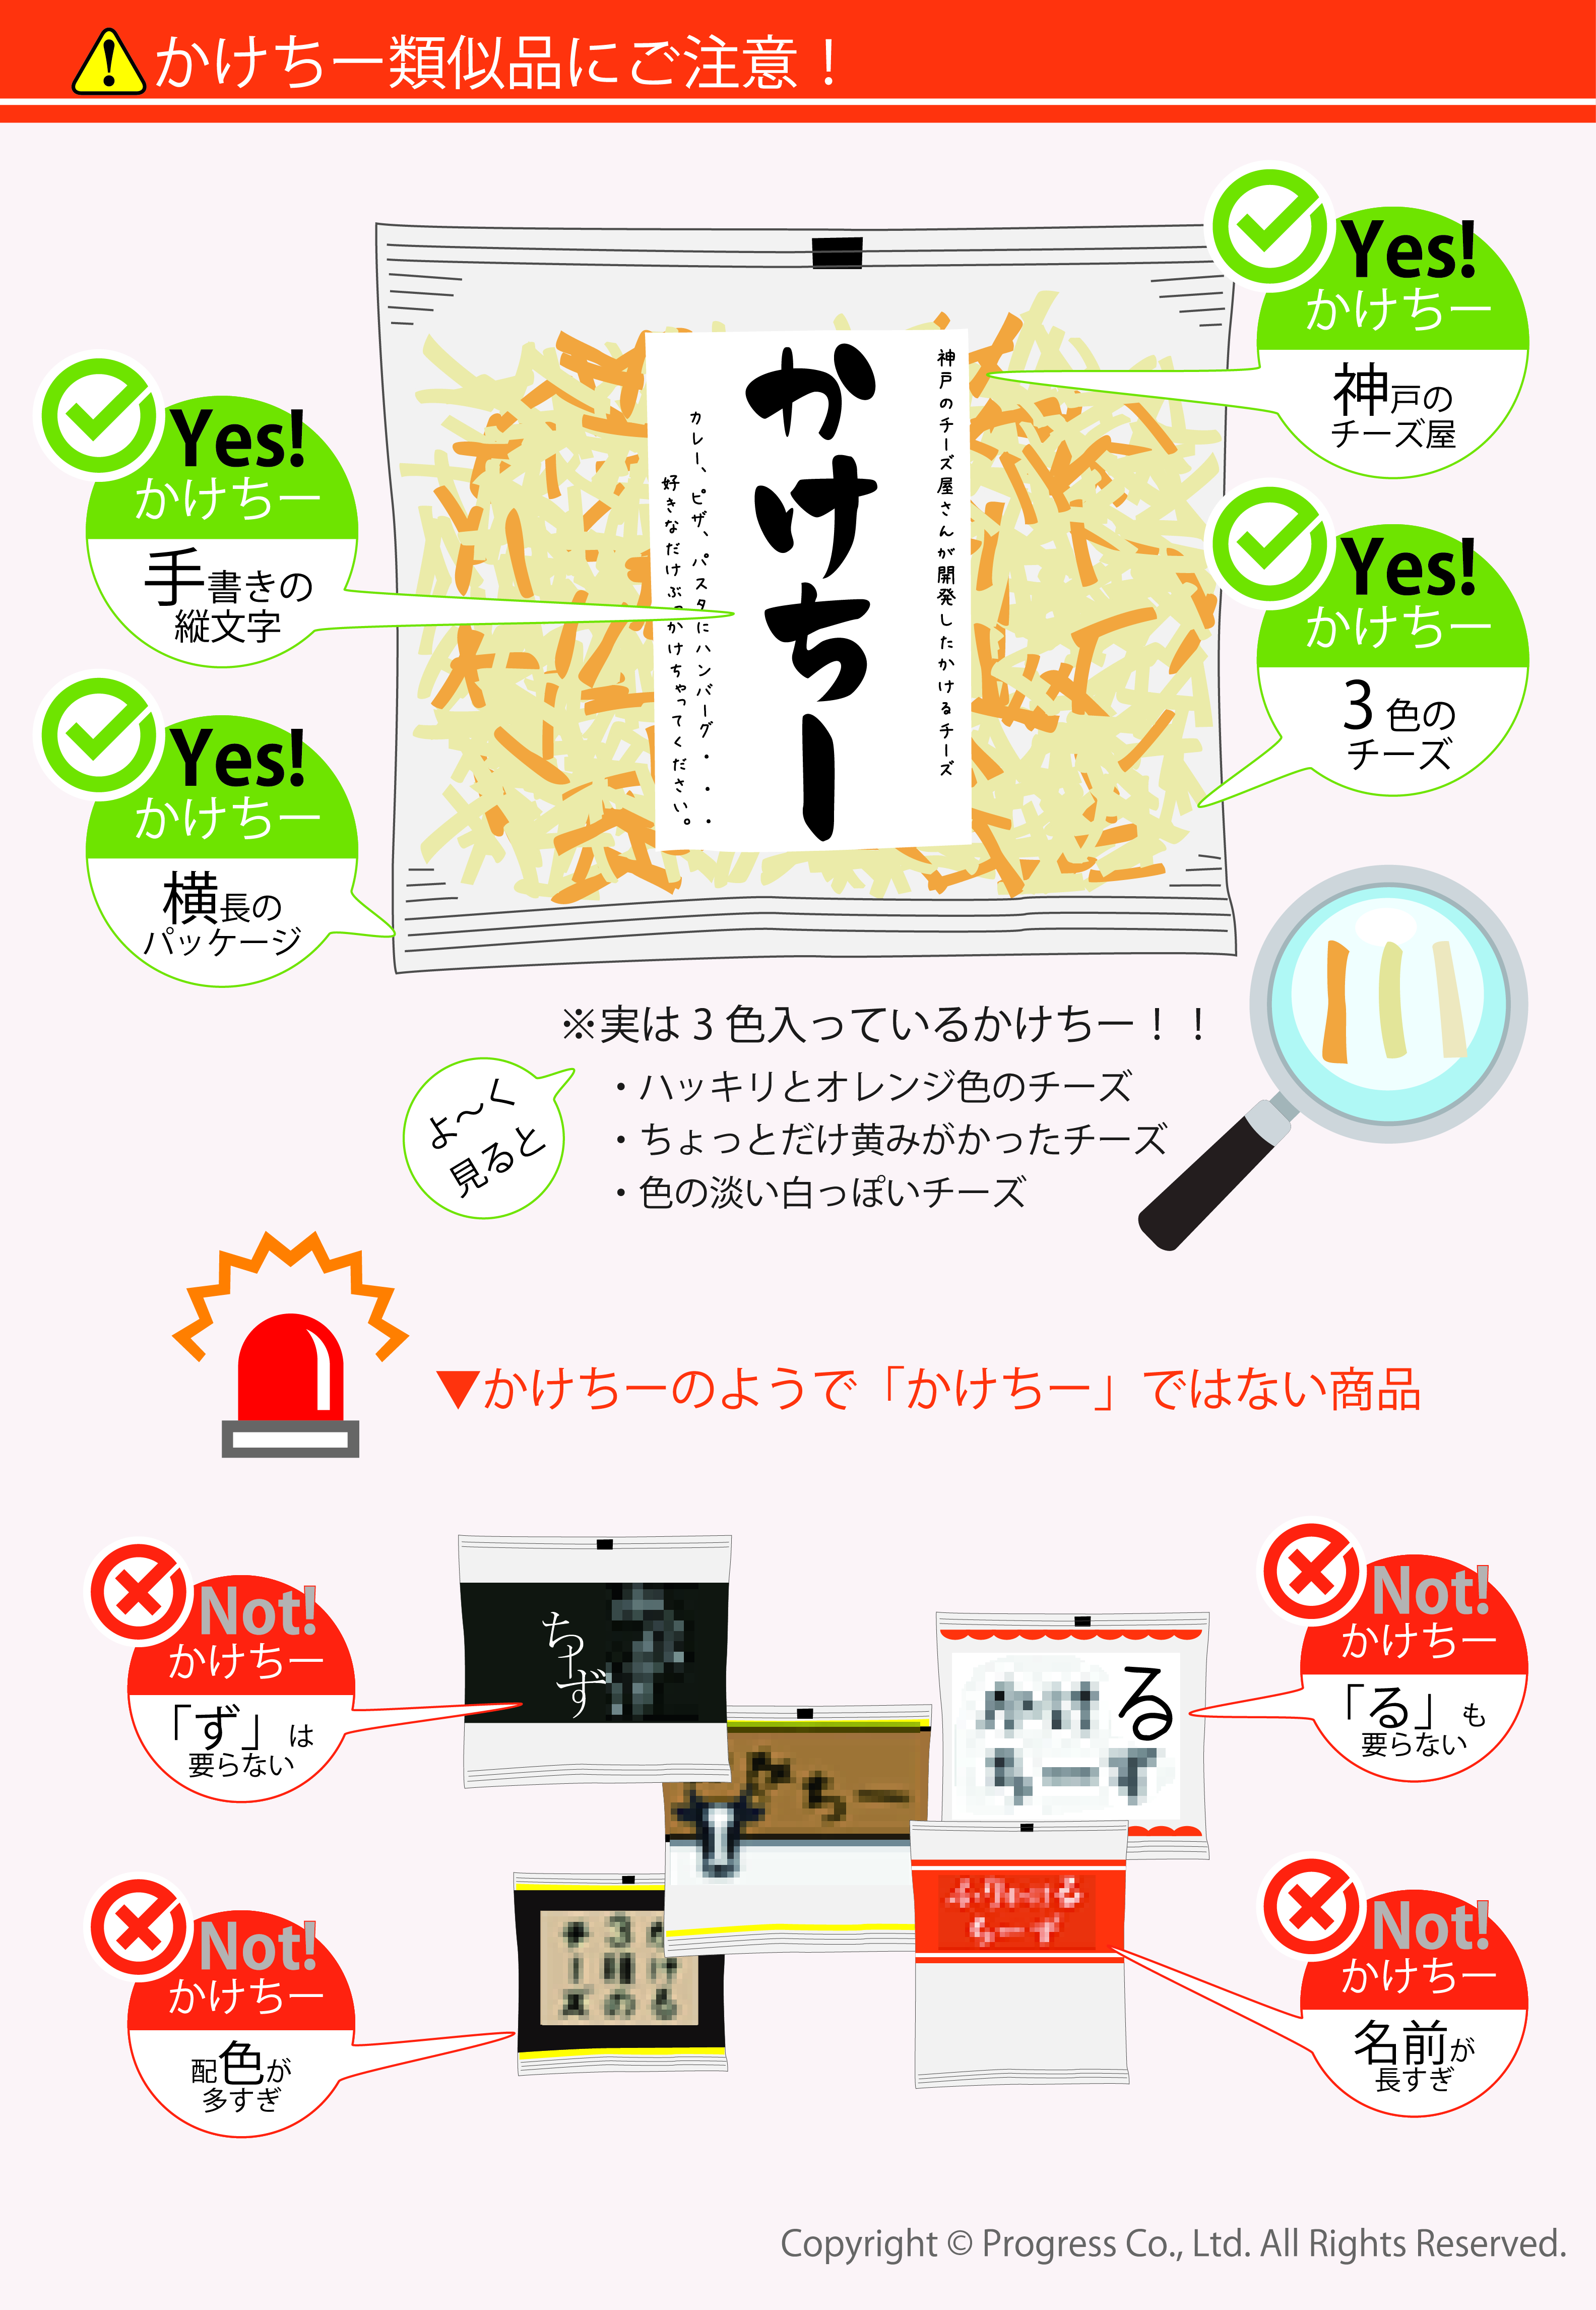 かけちー類似品にご注意！○神戸のチーズ屋 3色のチーズ 手書きの縦文字 横長のパッケージ